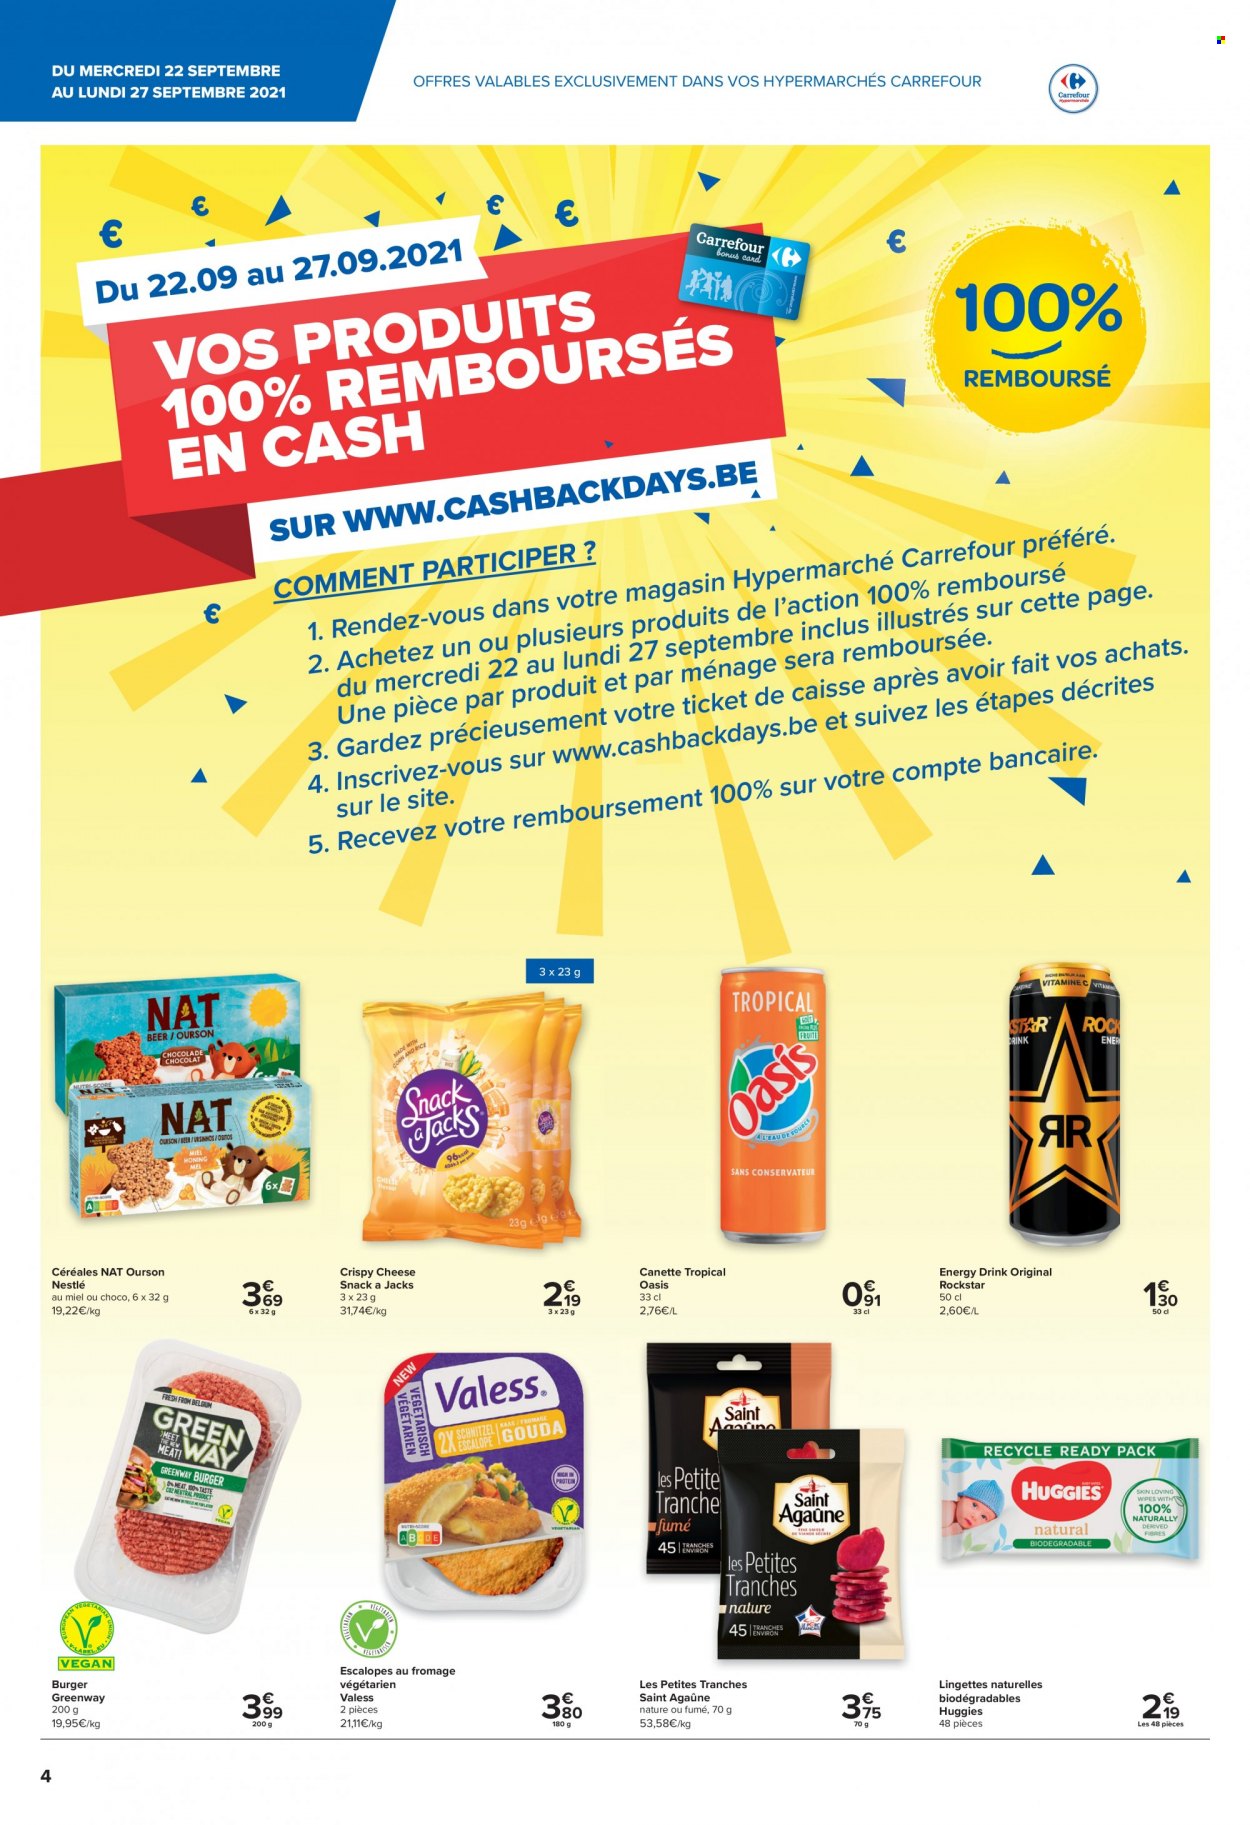 thumbnail - Catalogue Carrefour hypermarkt - 22/09/2021 - 27/09/2021 - Produits soldés - escalope, Saint Agaûne, Nestlé, Oasis, céréales, boisson énergétique, lingettes, Huggies. Page 4.